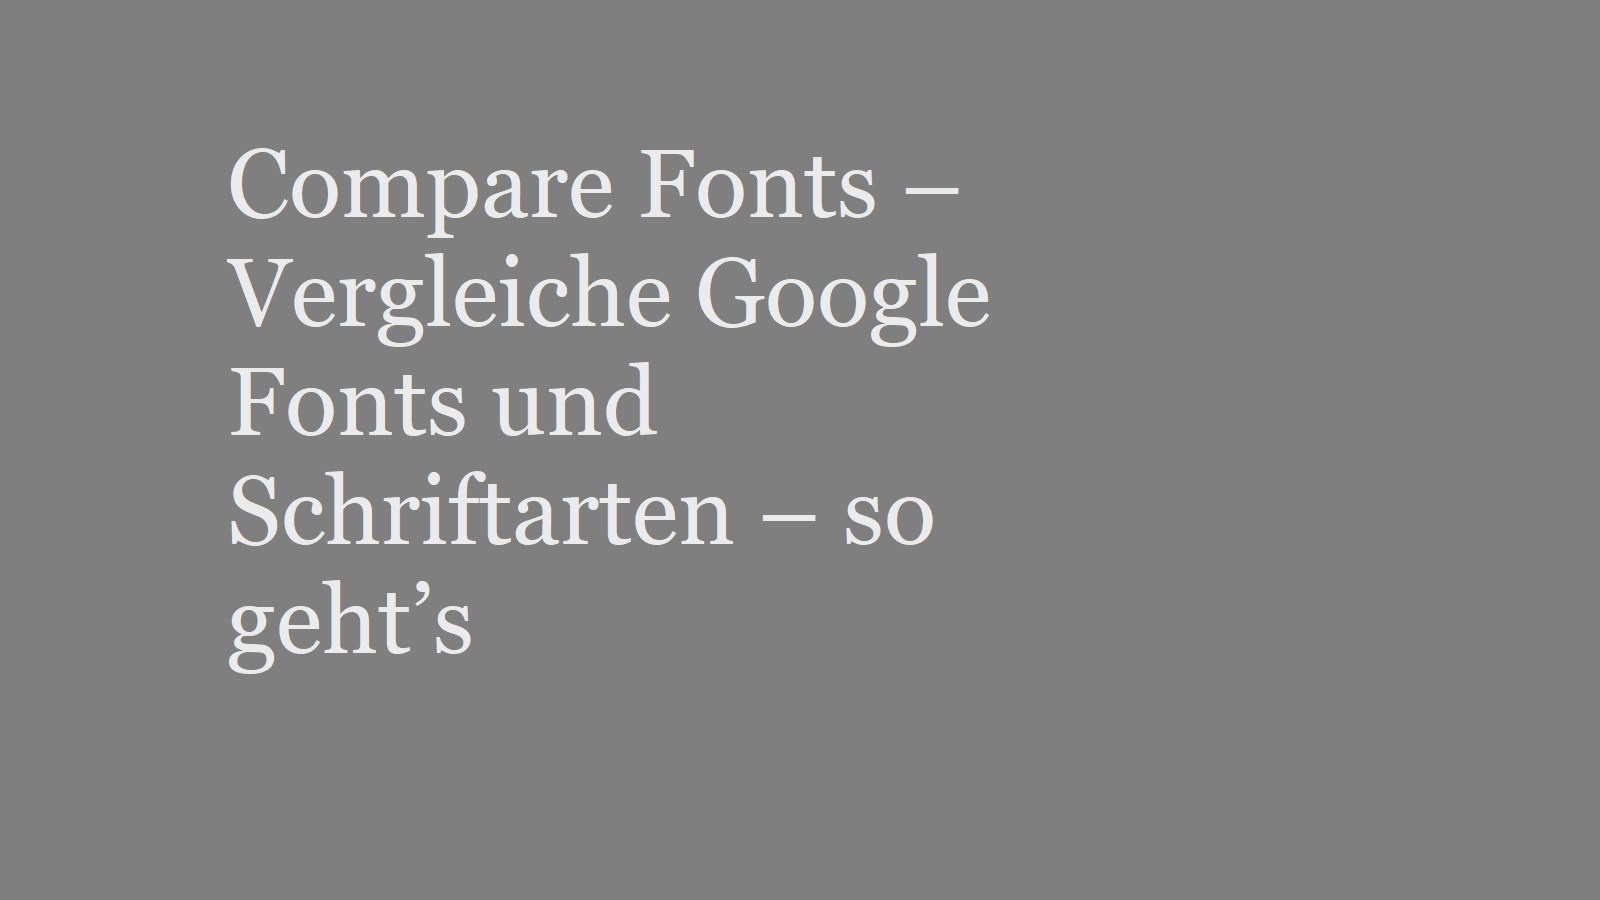 Compare Fonts – Vergleiche Google Fonts und Schriftarten – mit und ohne Plugin